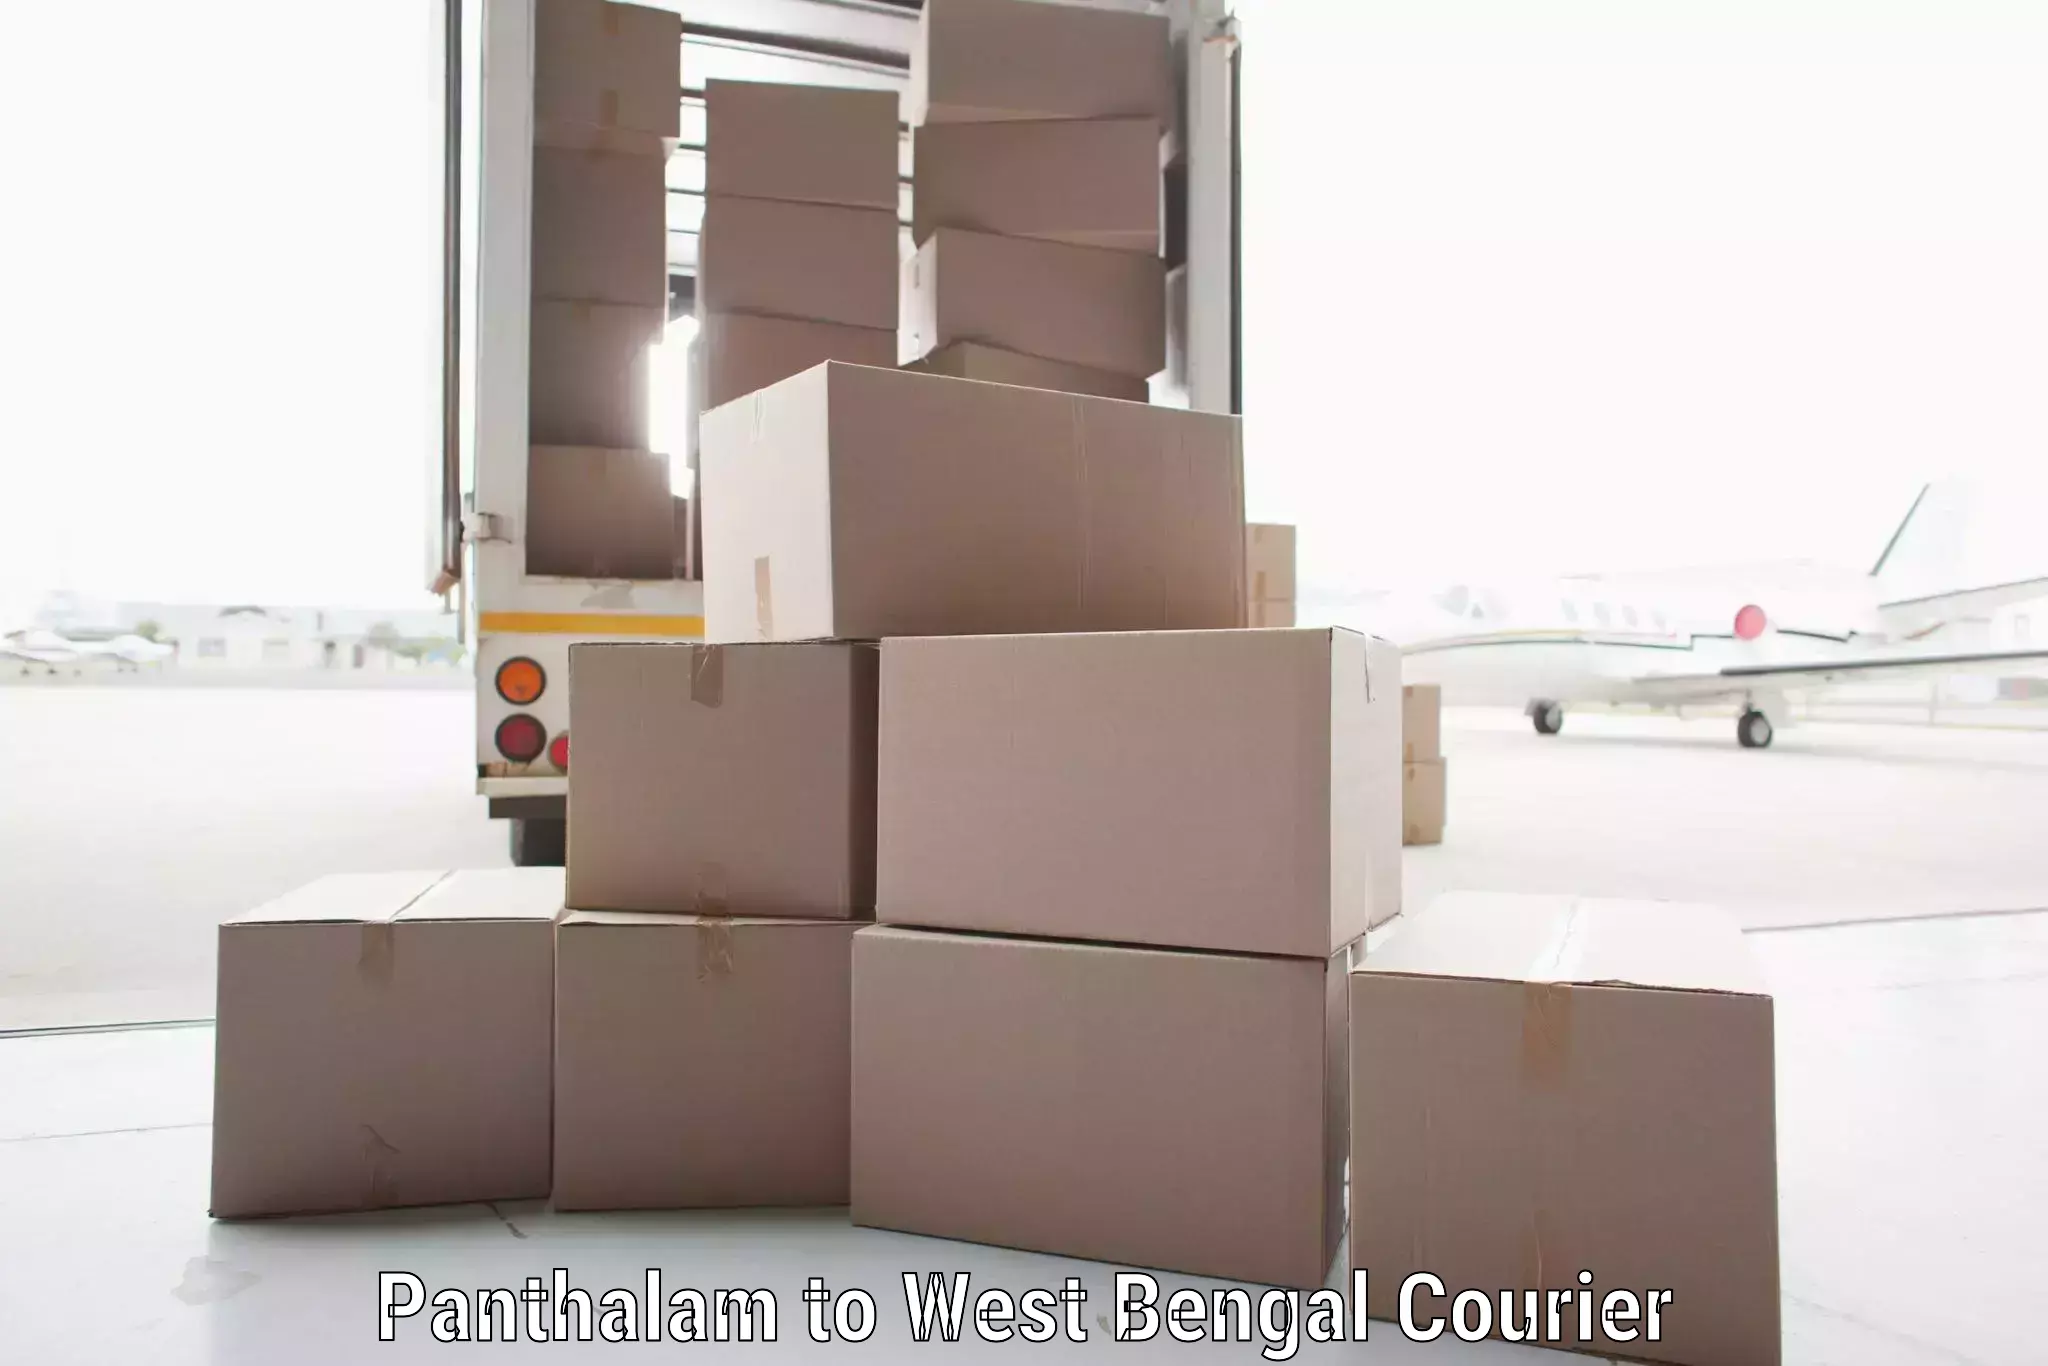 Door-to-door freight service Panthalam to Habra